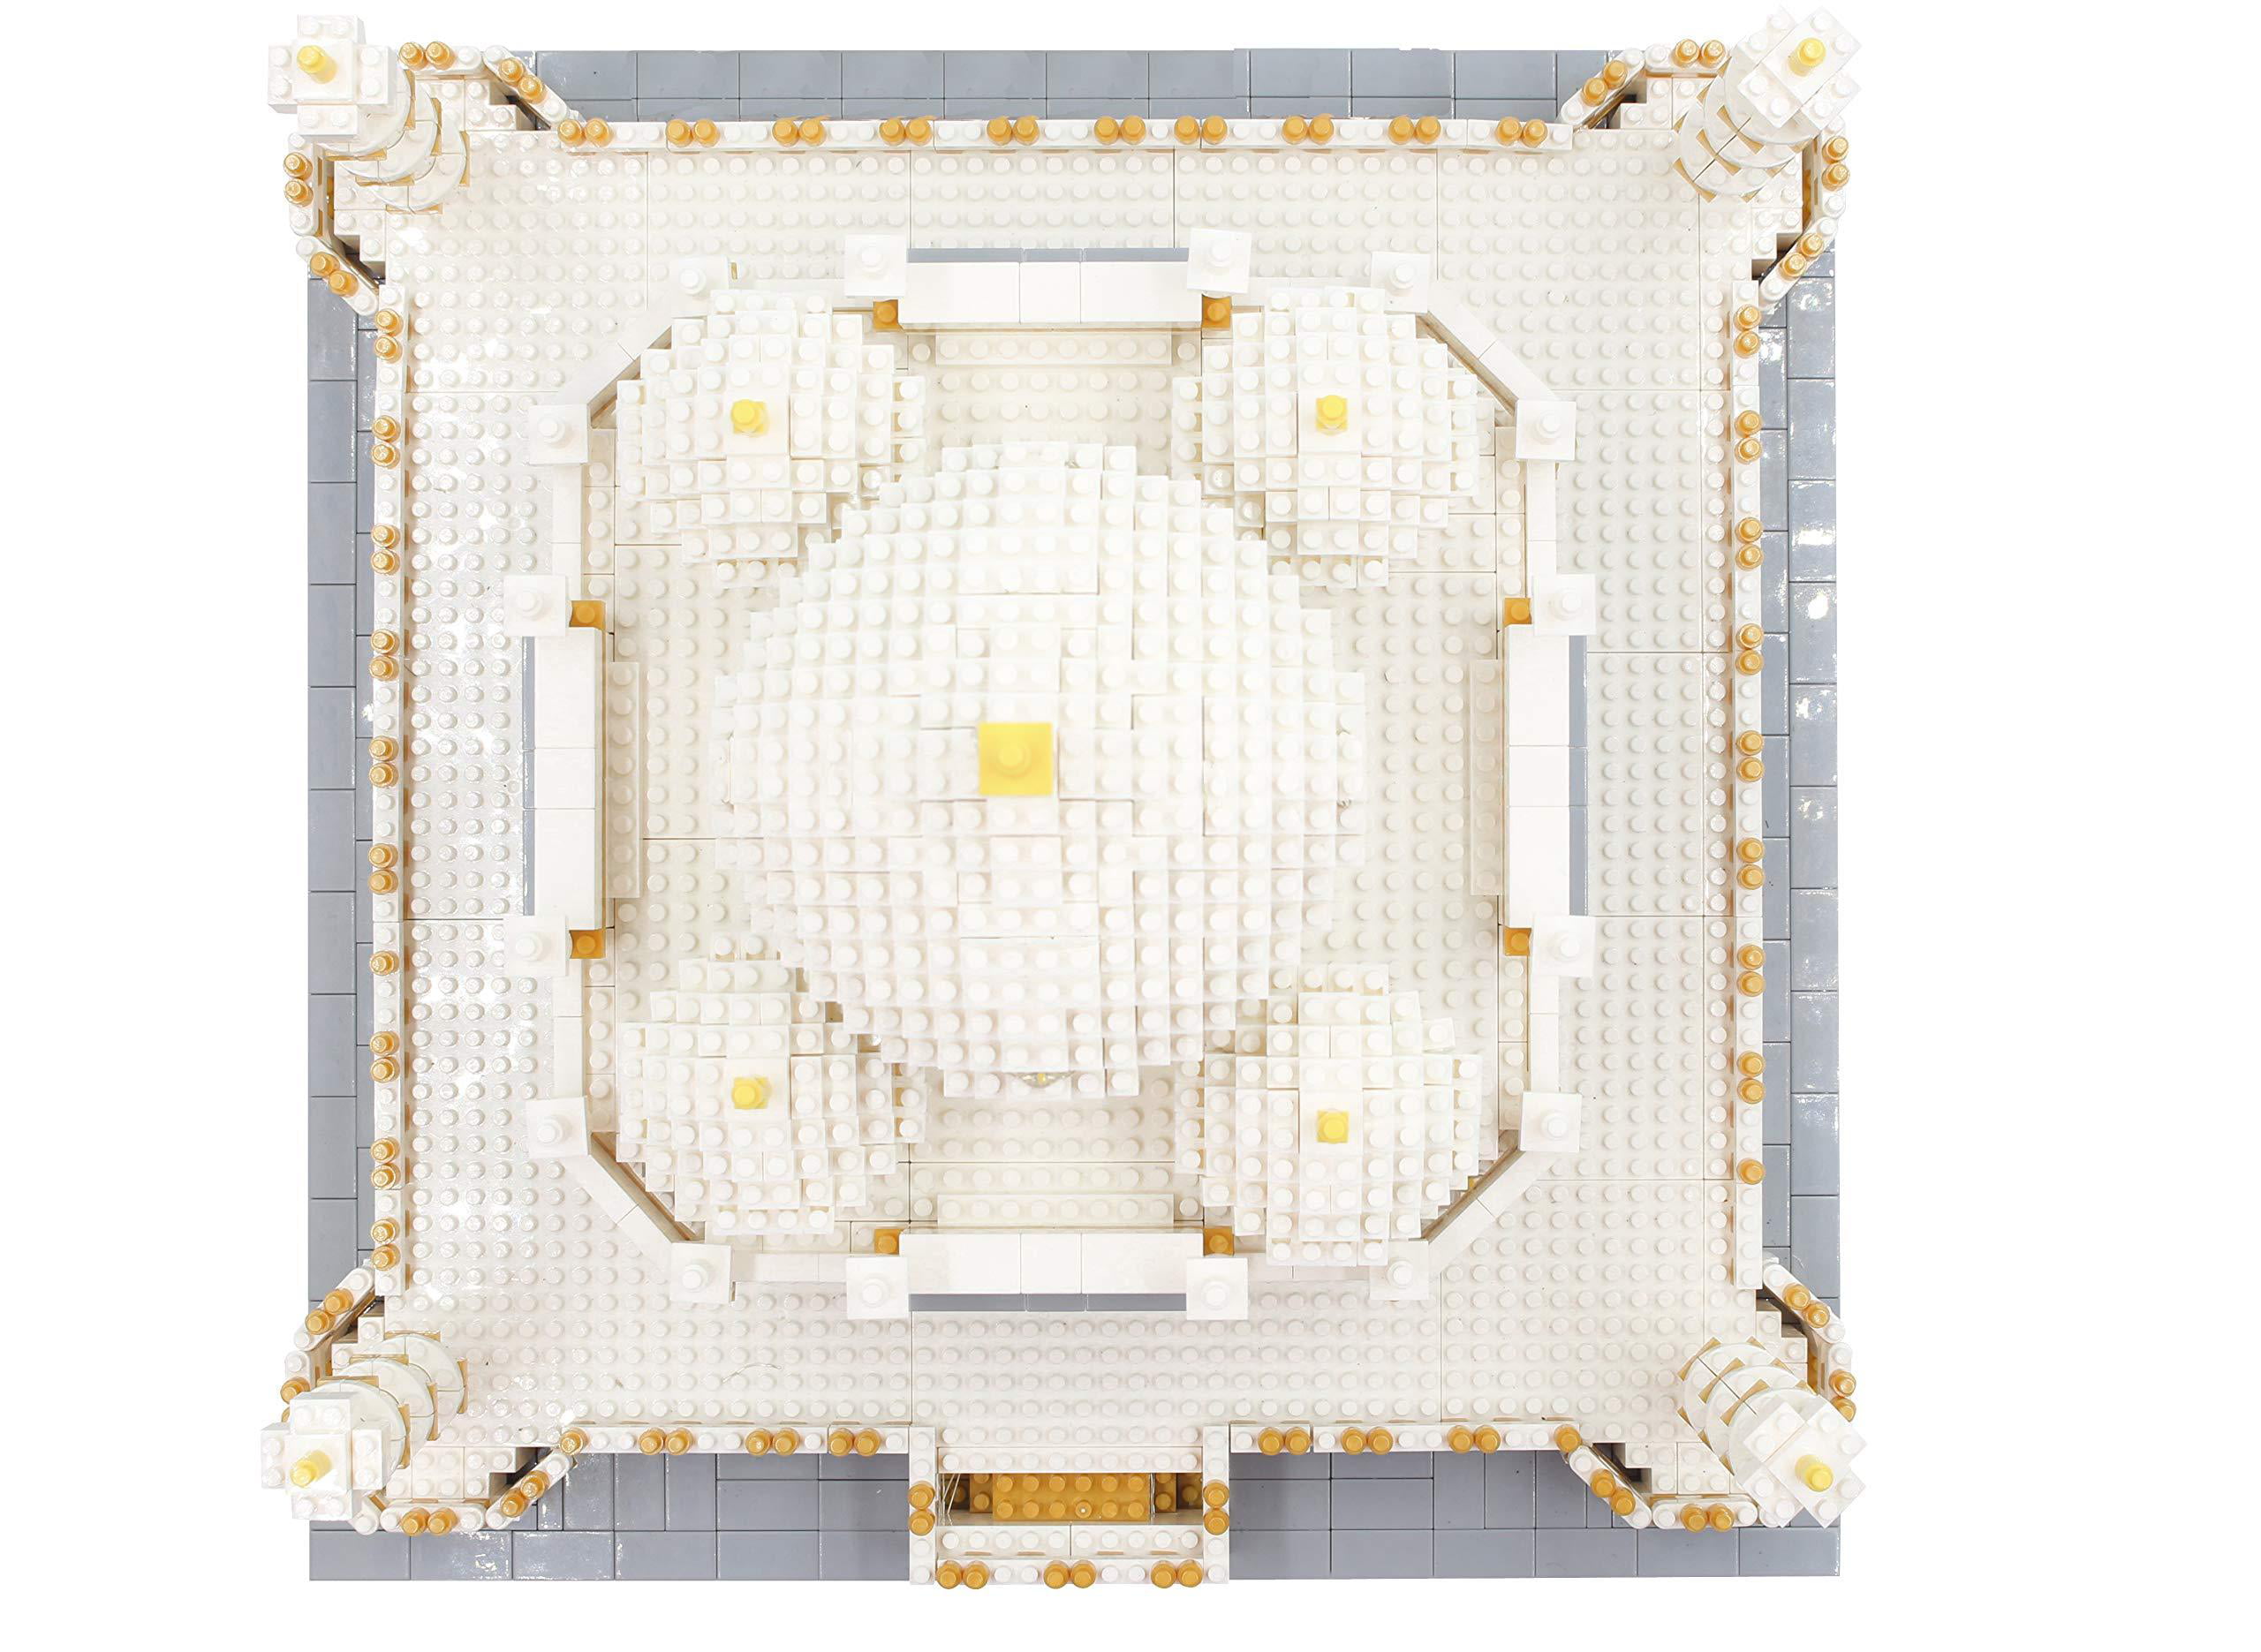 Details about   dOvOb Micro Mini Blocks Taj Mahal Building Architecture Model Set 4000 PCS Toy 